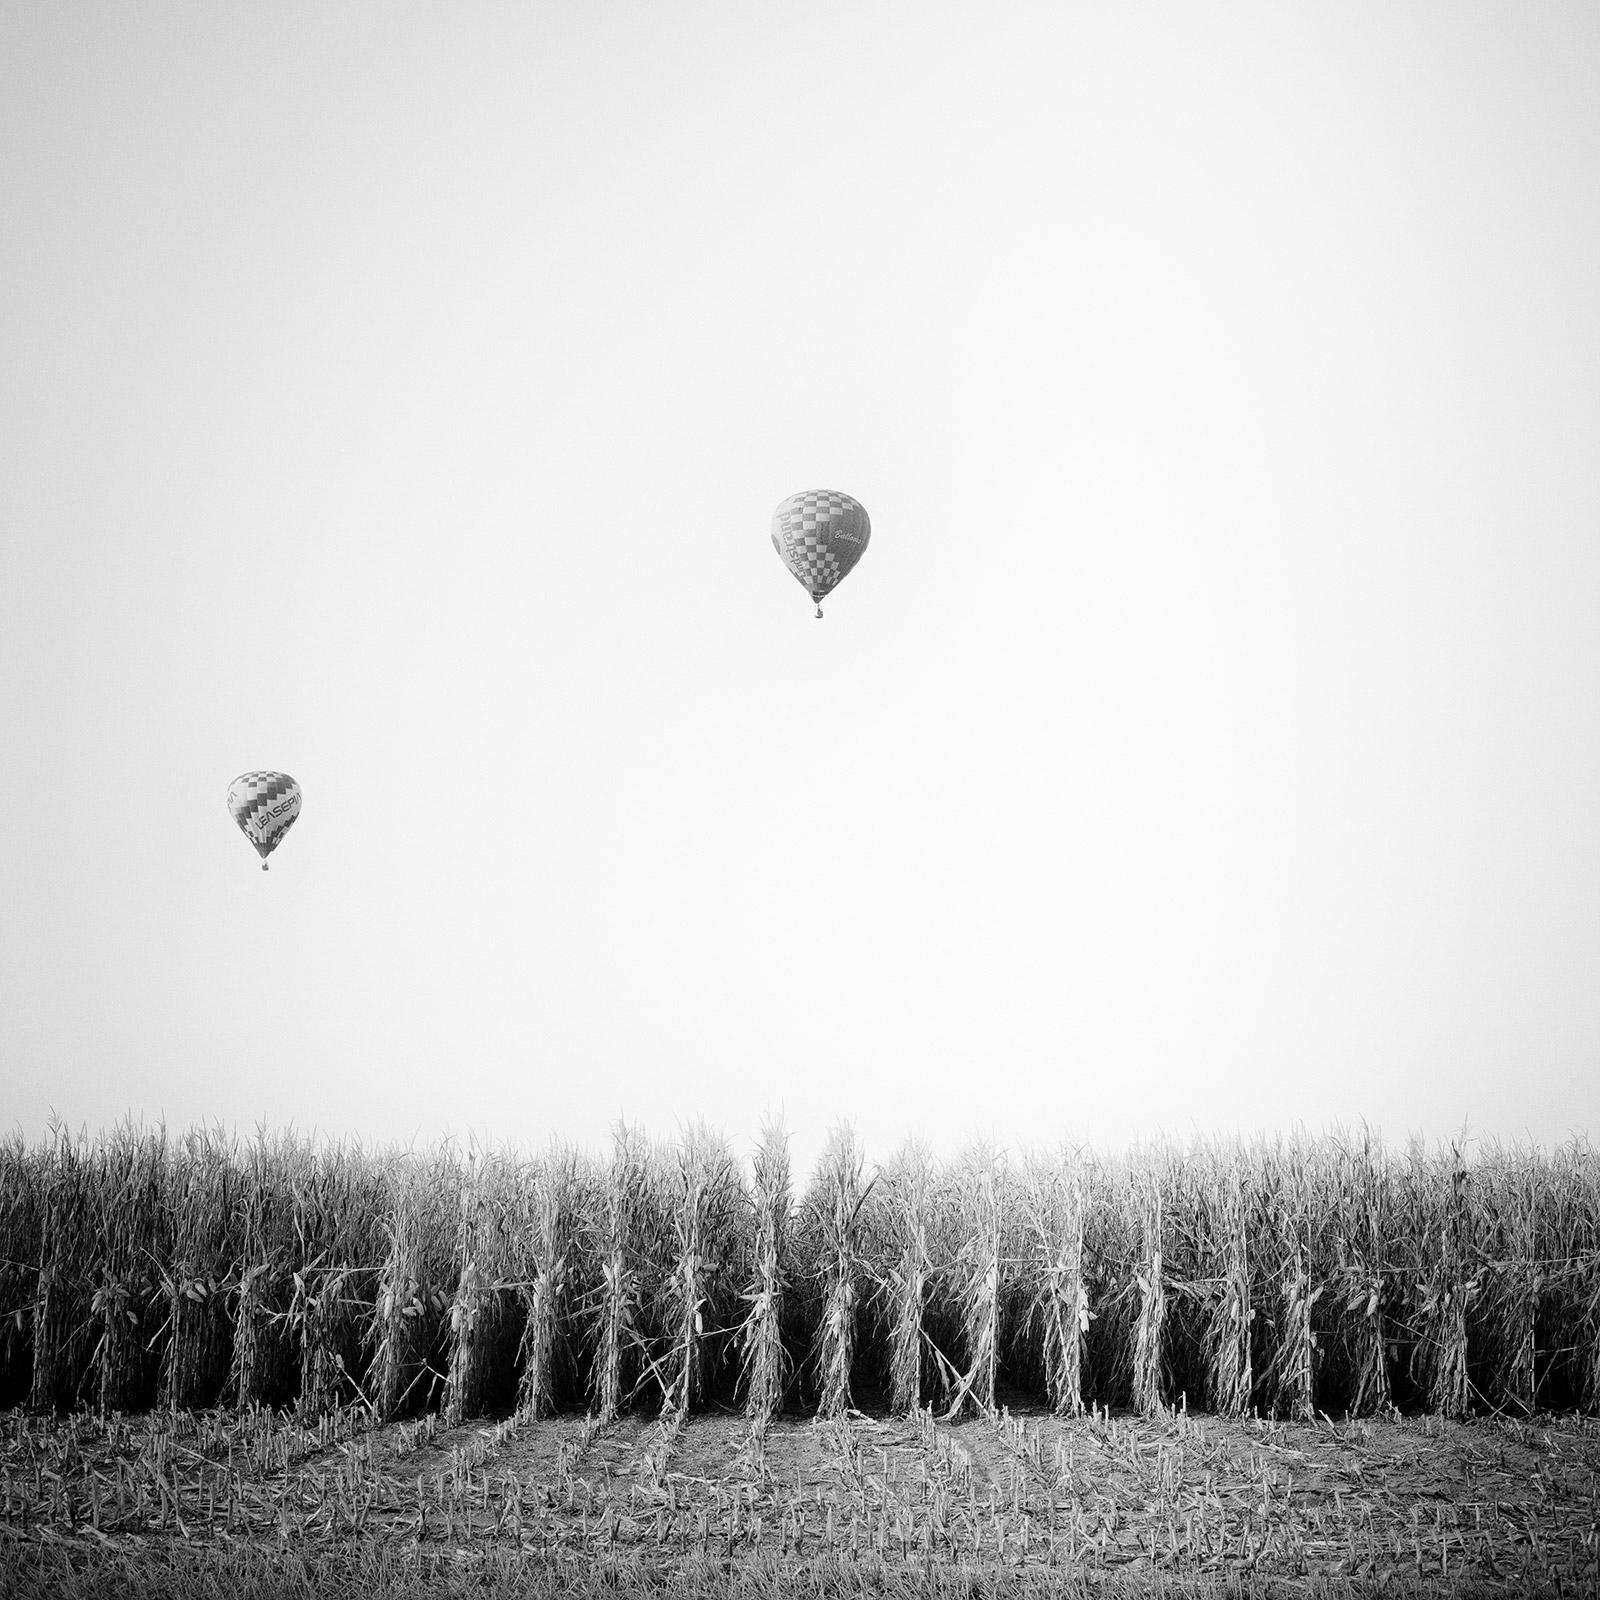 Gerald Berghammer Black and White Photograph – Hot Air Balloon, Cornfield, Championship, Schwarz-Weiß-Landschaftsfotodruck